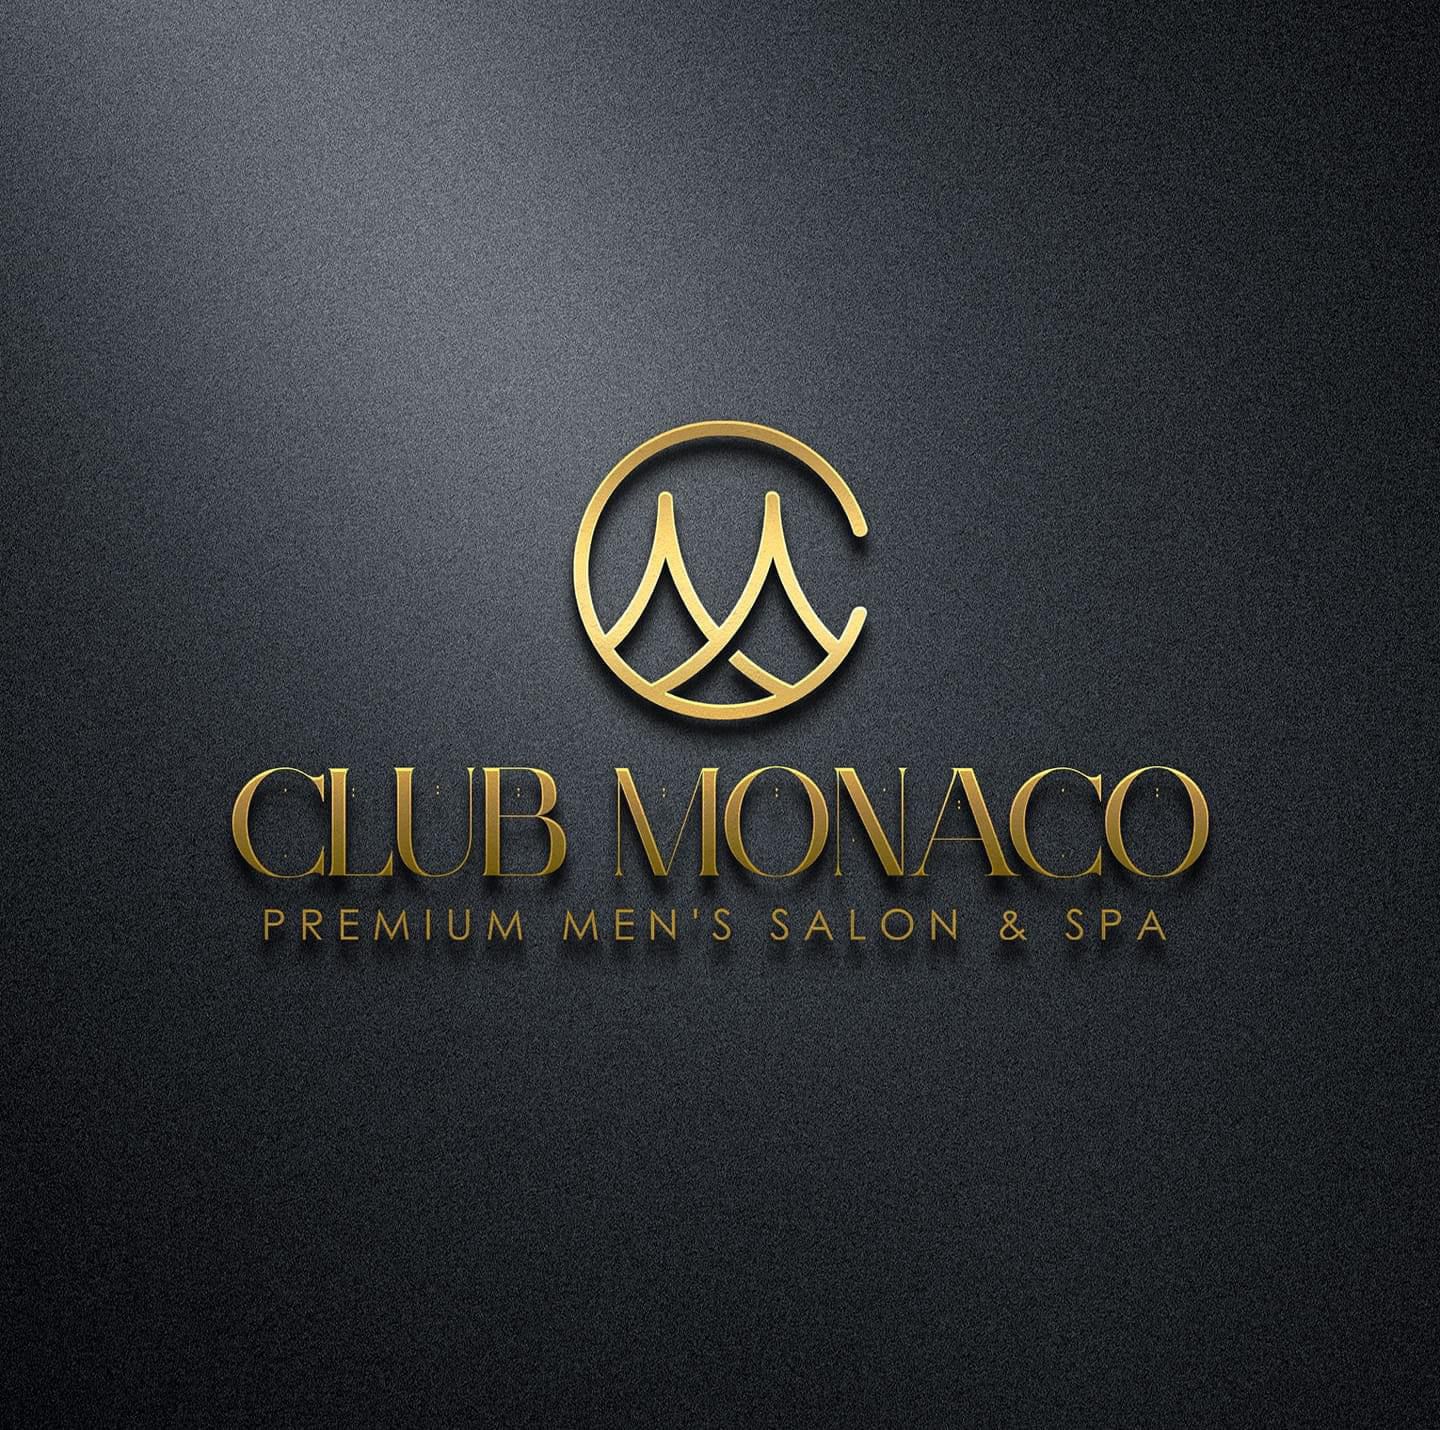 Club Monaco staff 2